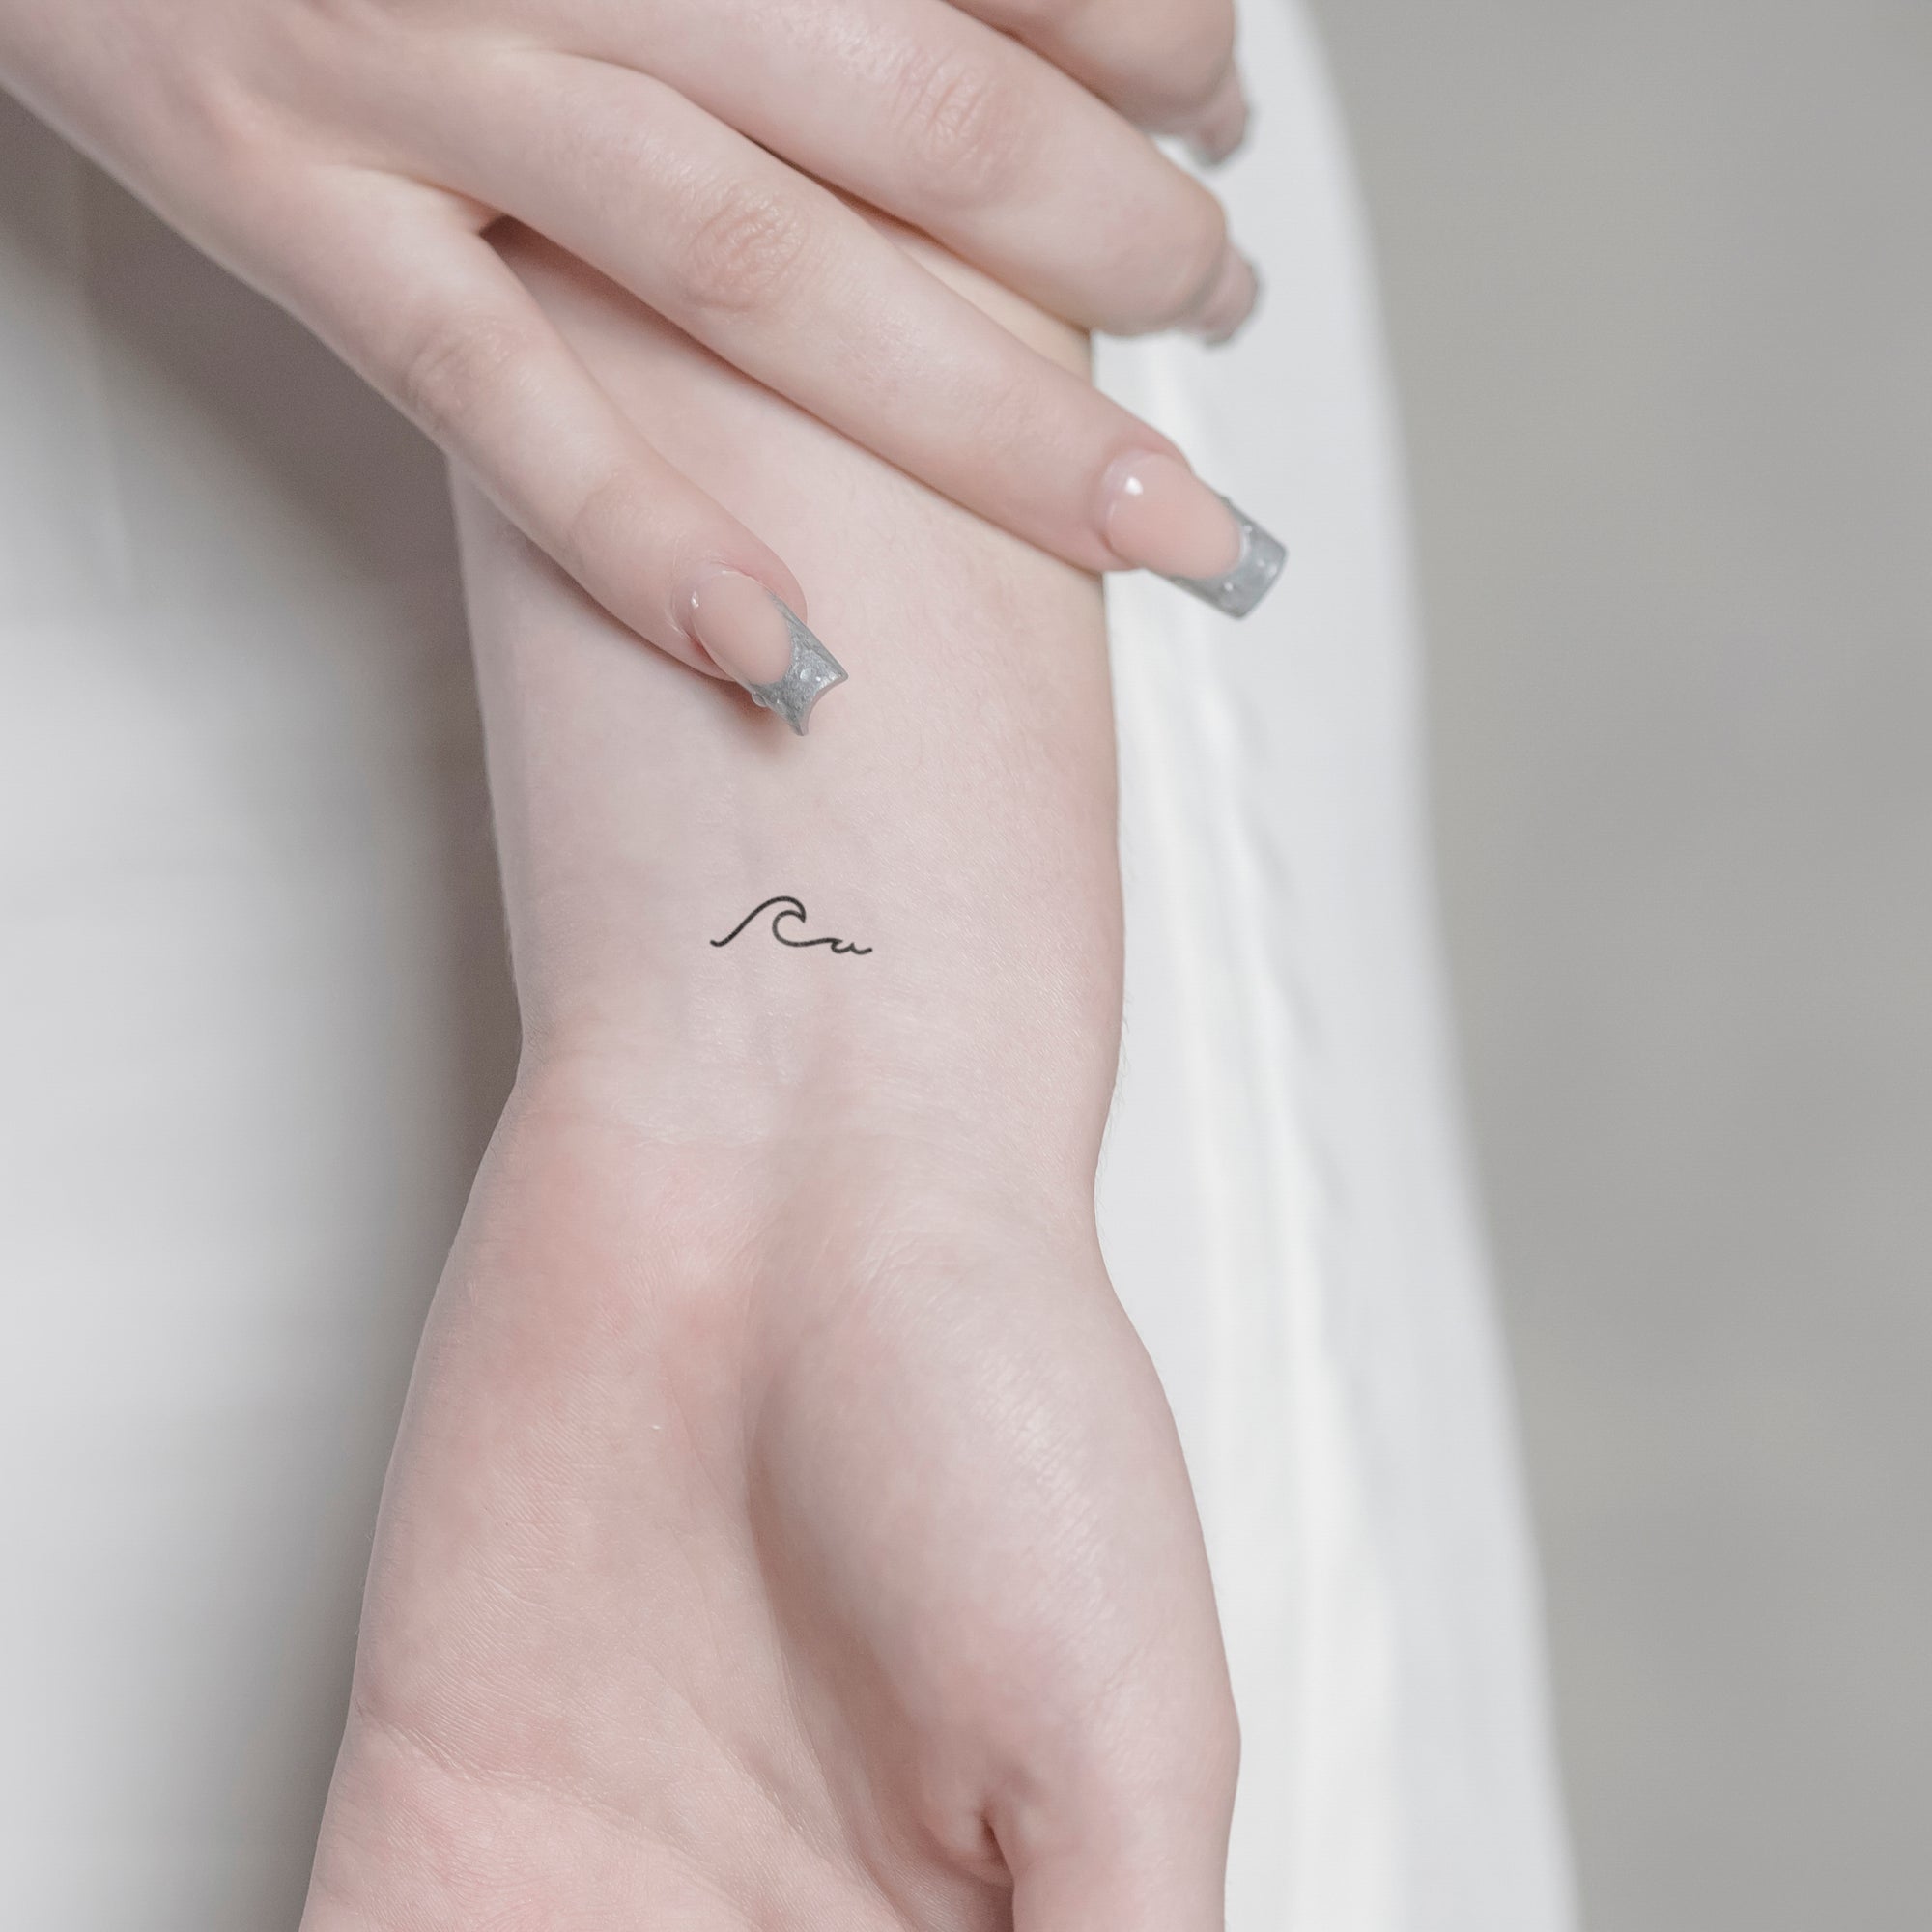 Stilistische Welle Tattoo von minink, der Marke für temporäre Tattoos.